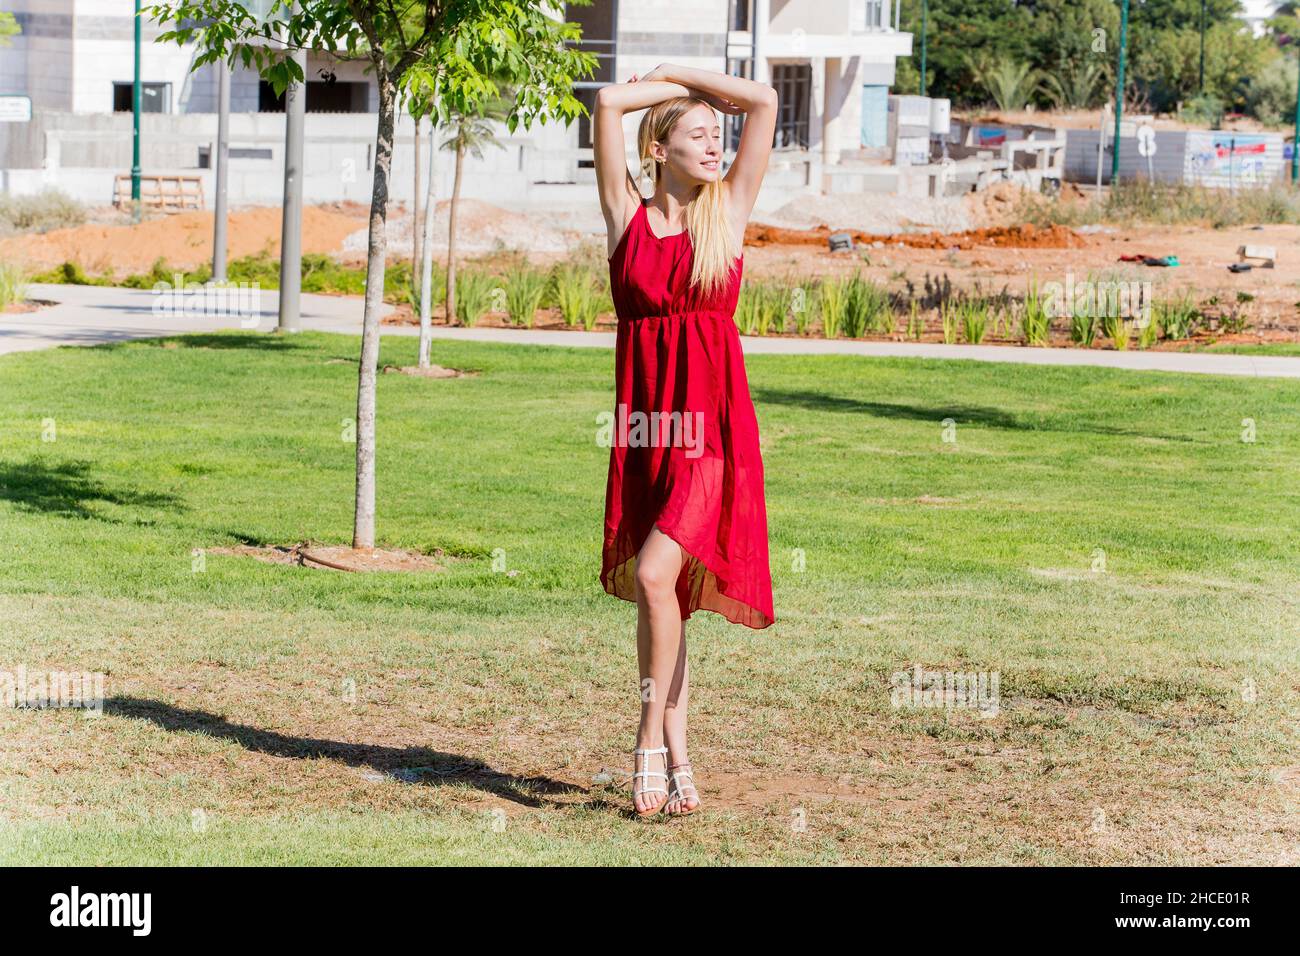 La jeune femme en robe rouge apprécie l'air frais dehors Banque D'Images